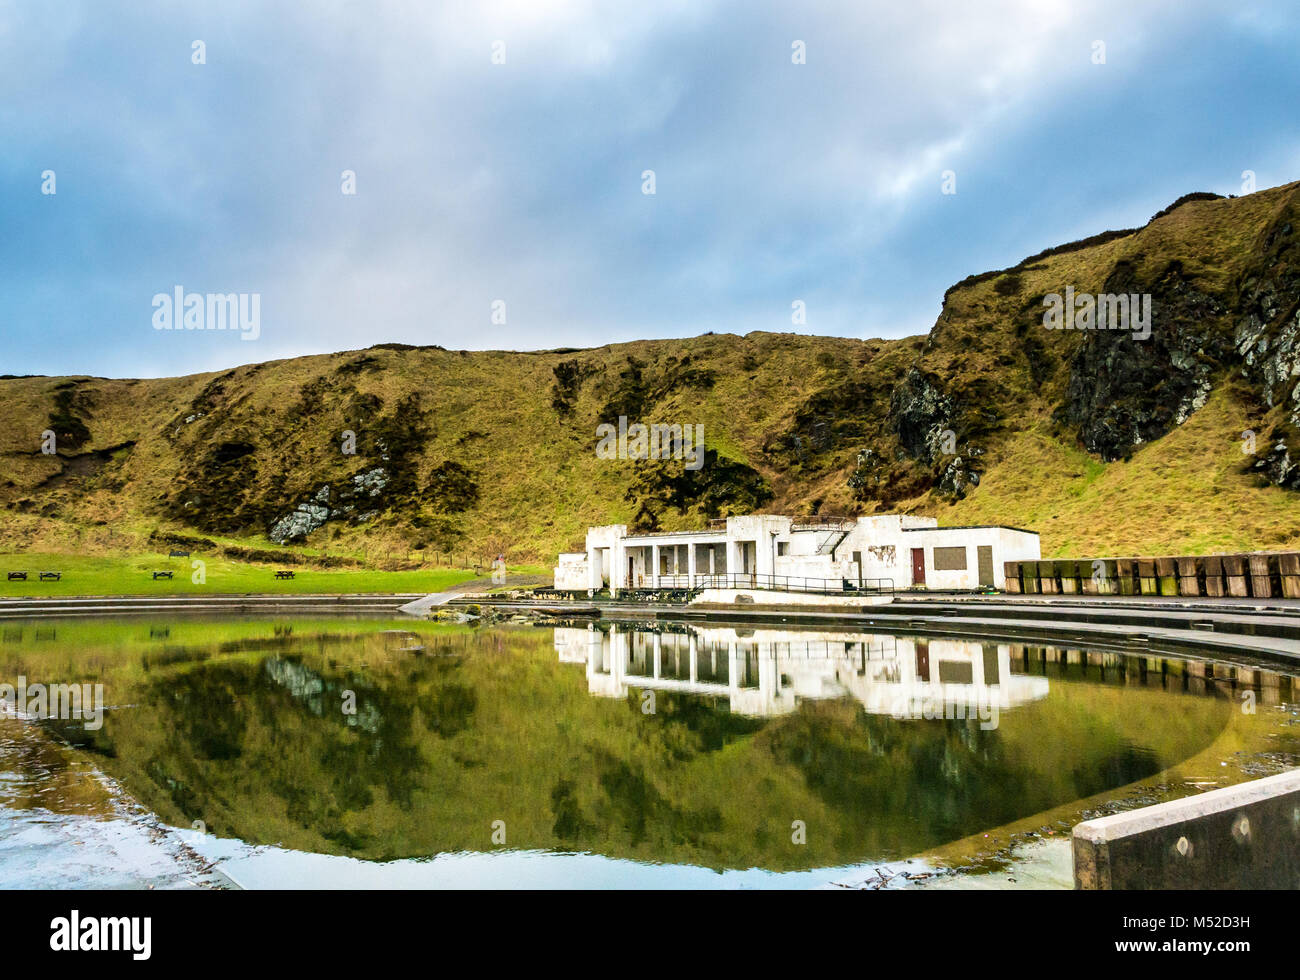 Tarlair Freibad, MacDuff, Aberdeenshire, Schottland, Großbritannien. Spiegelung des alten Gebäudes in stillem Wasser Stockfoto